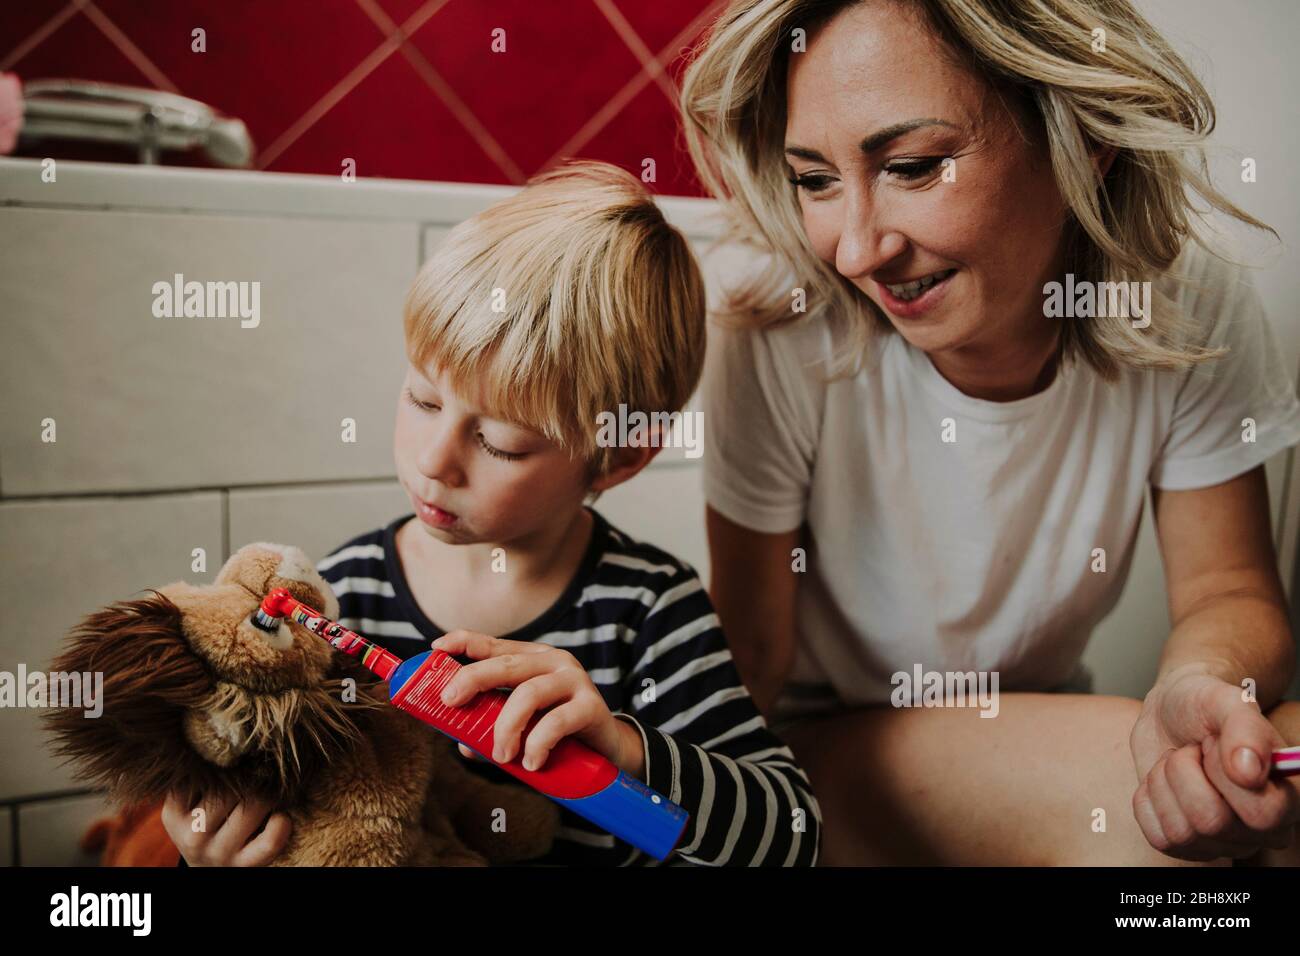 kleiner Junge mit Stofftier und Zahnbürste, Mutter sieht ihm zu Foto Stock